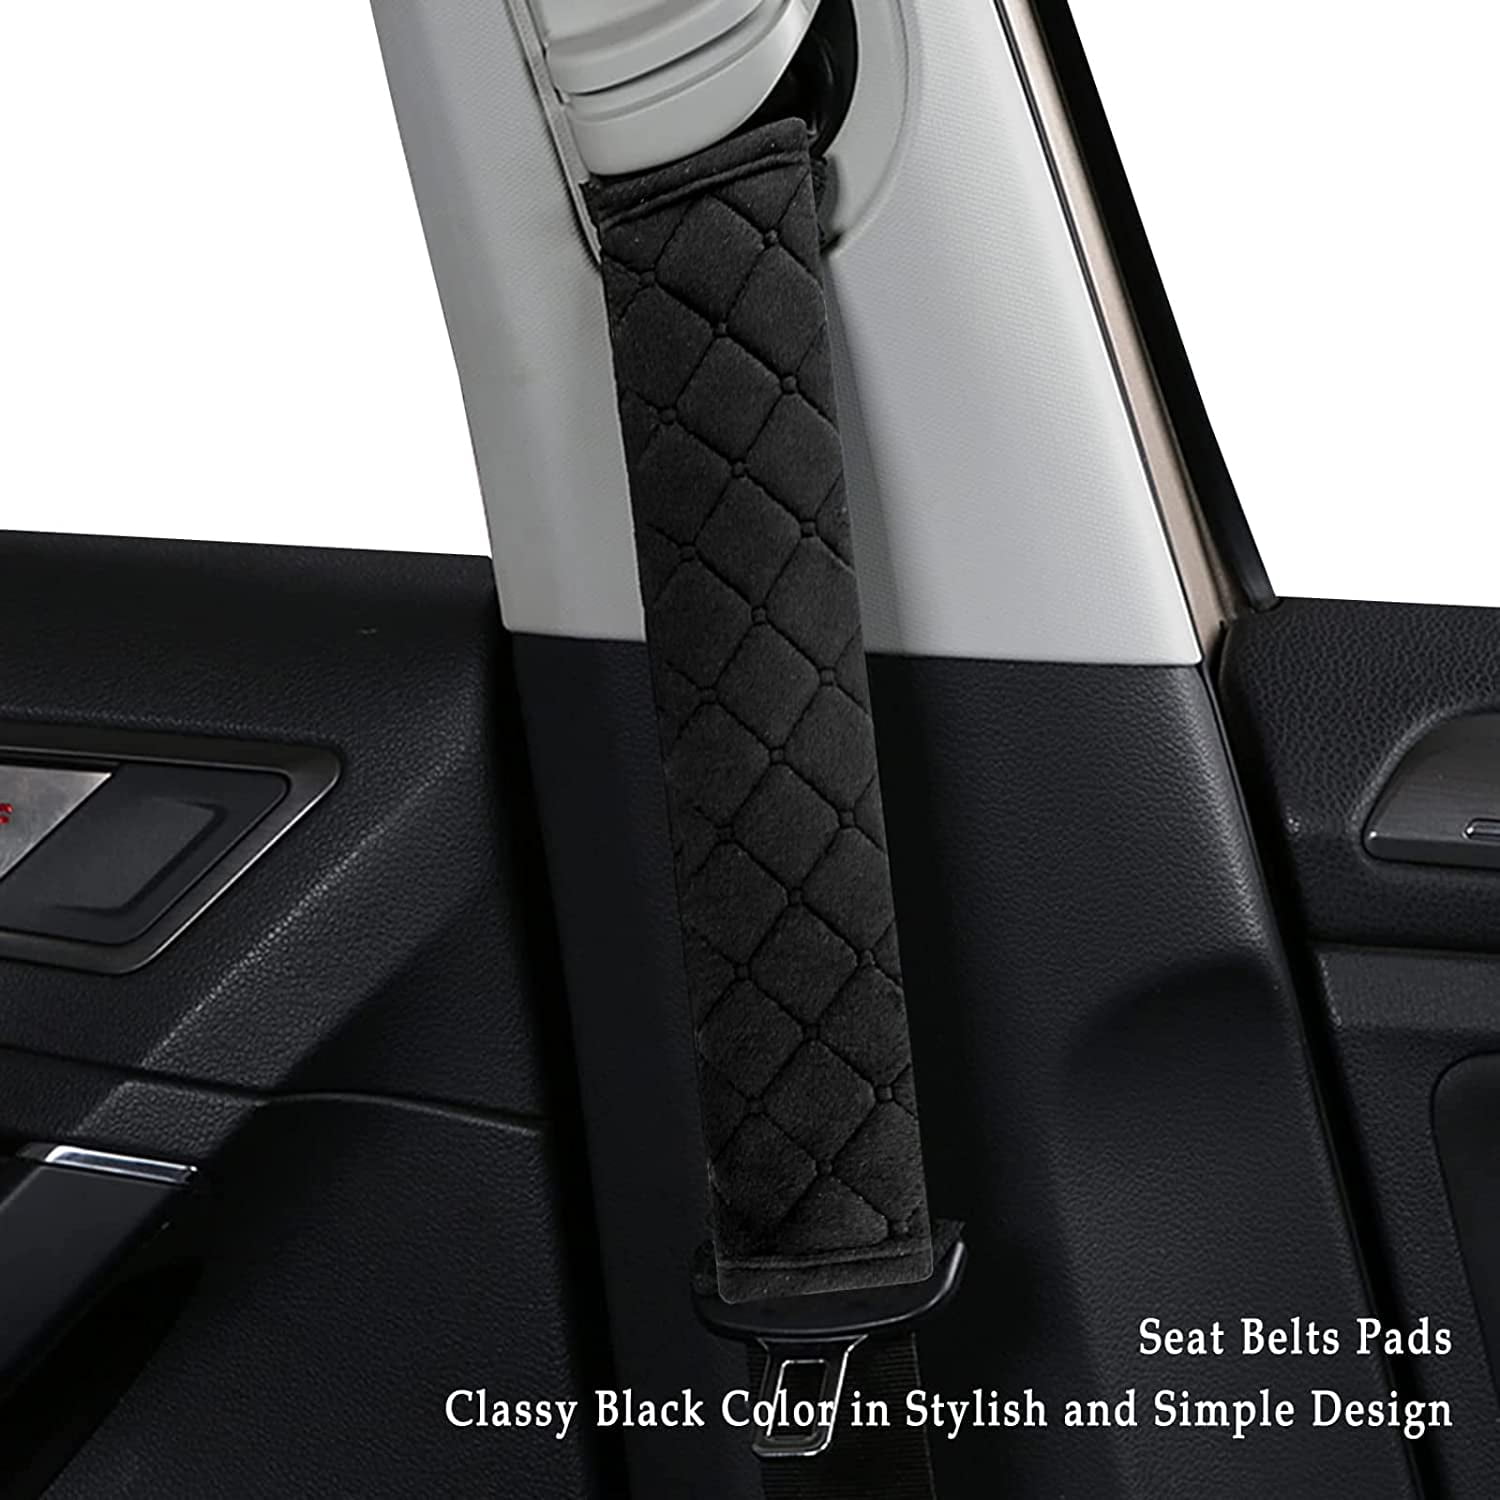 2Pack Car Seat Belt Pads Cover,Casewin Seat Belt Shoulder Strap